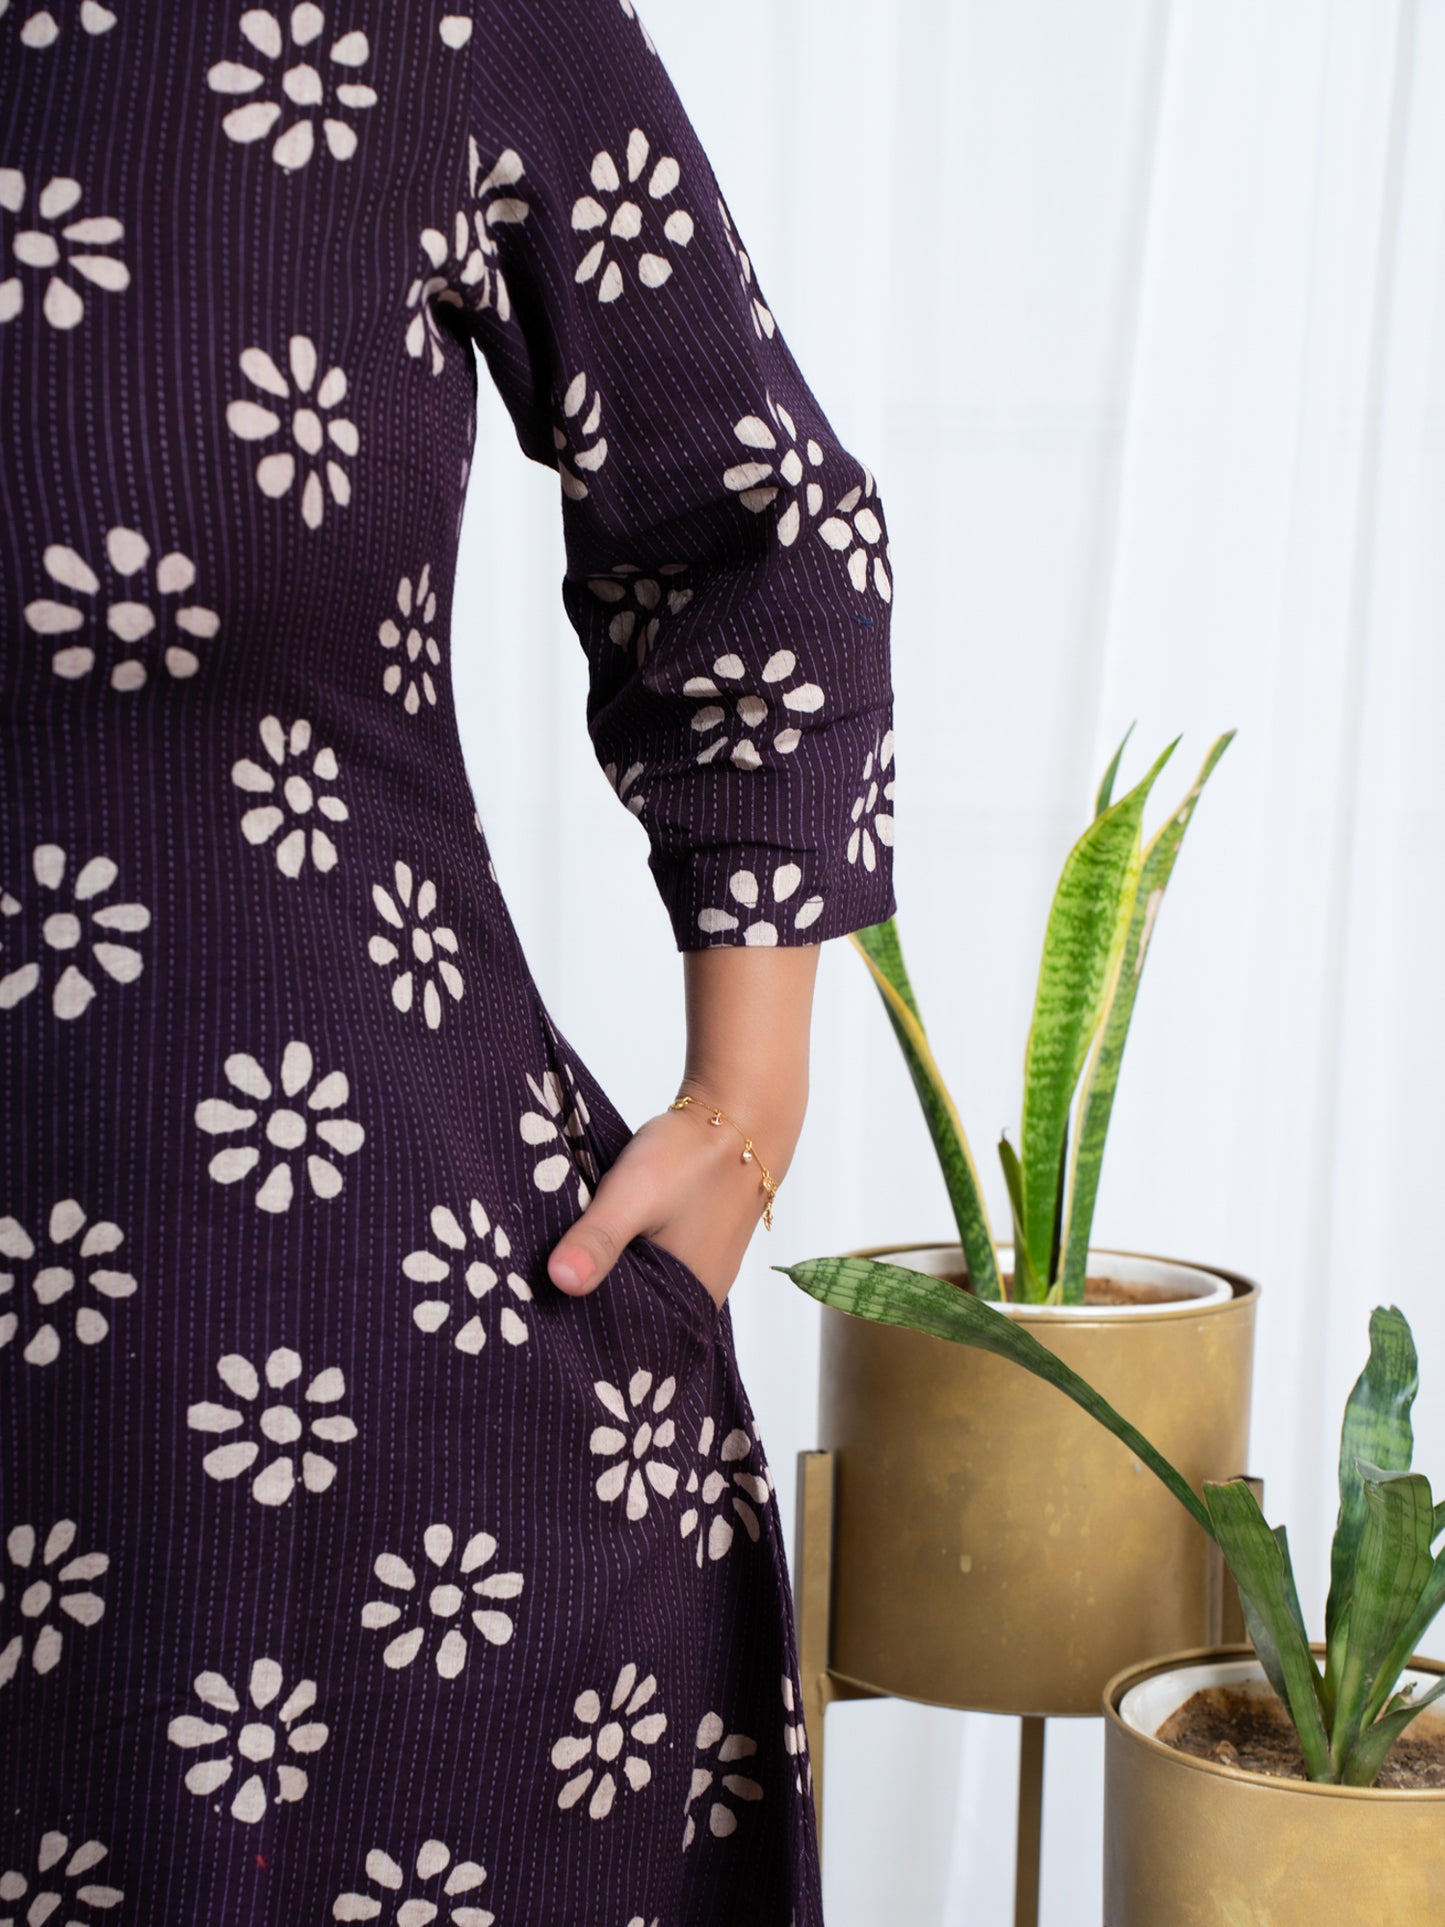 Flower block print cotton dresses online